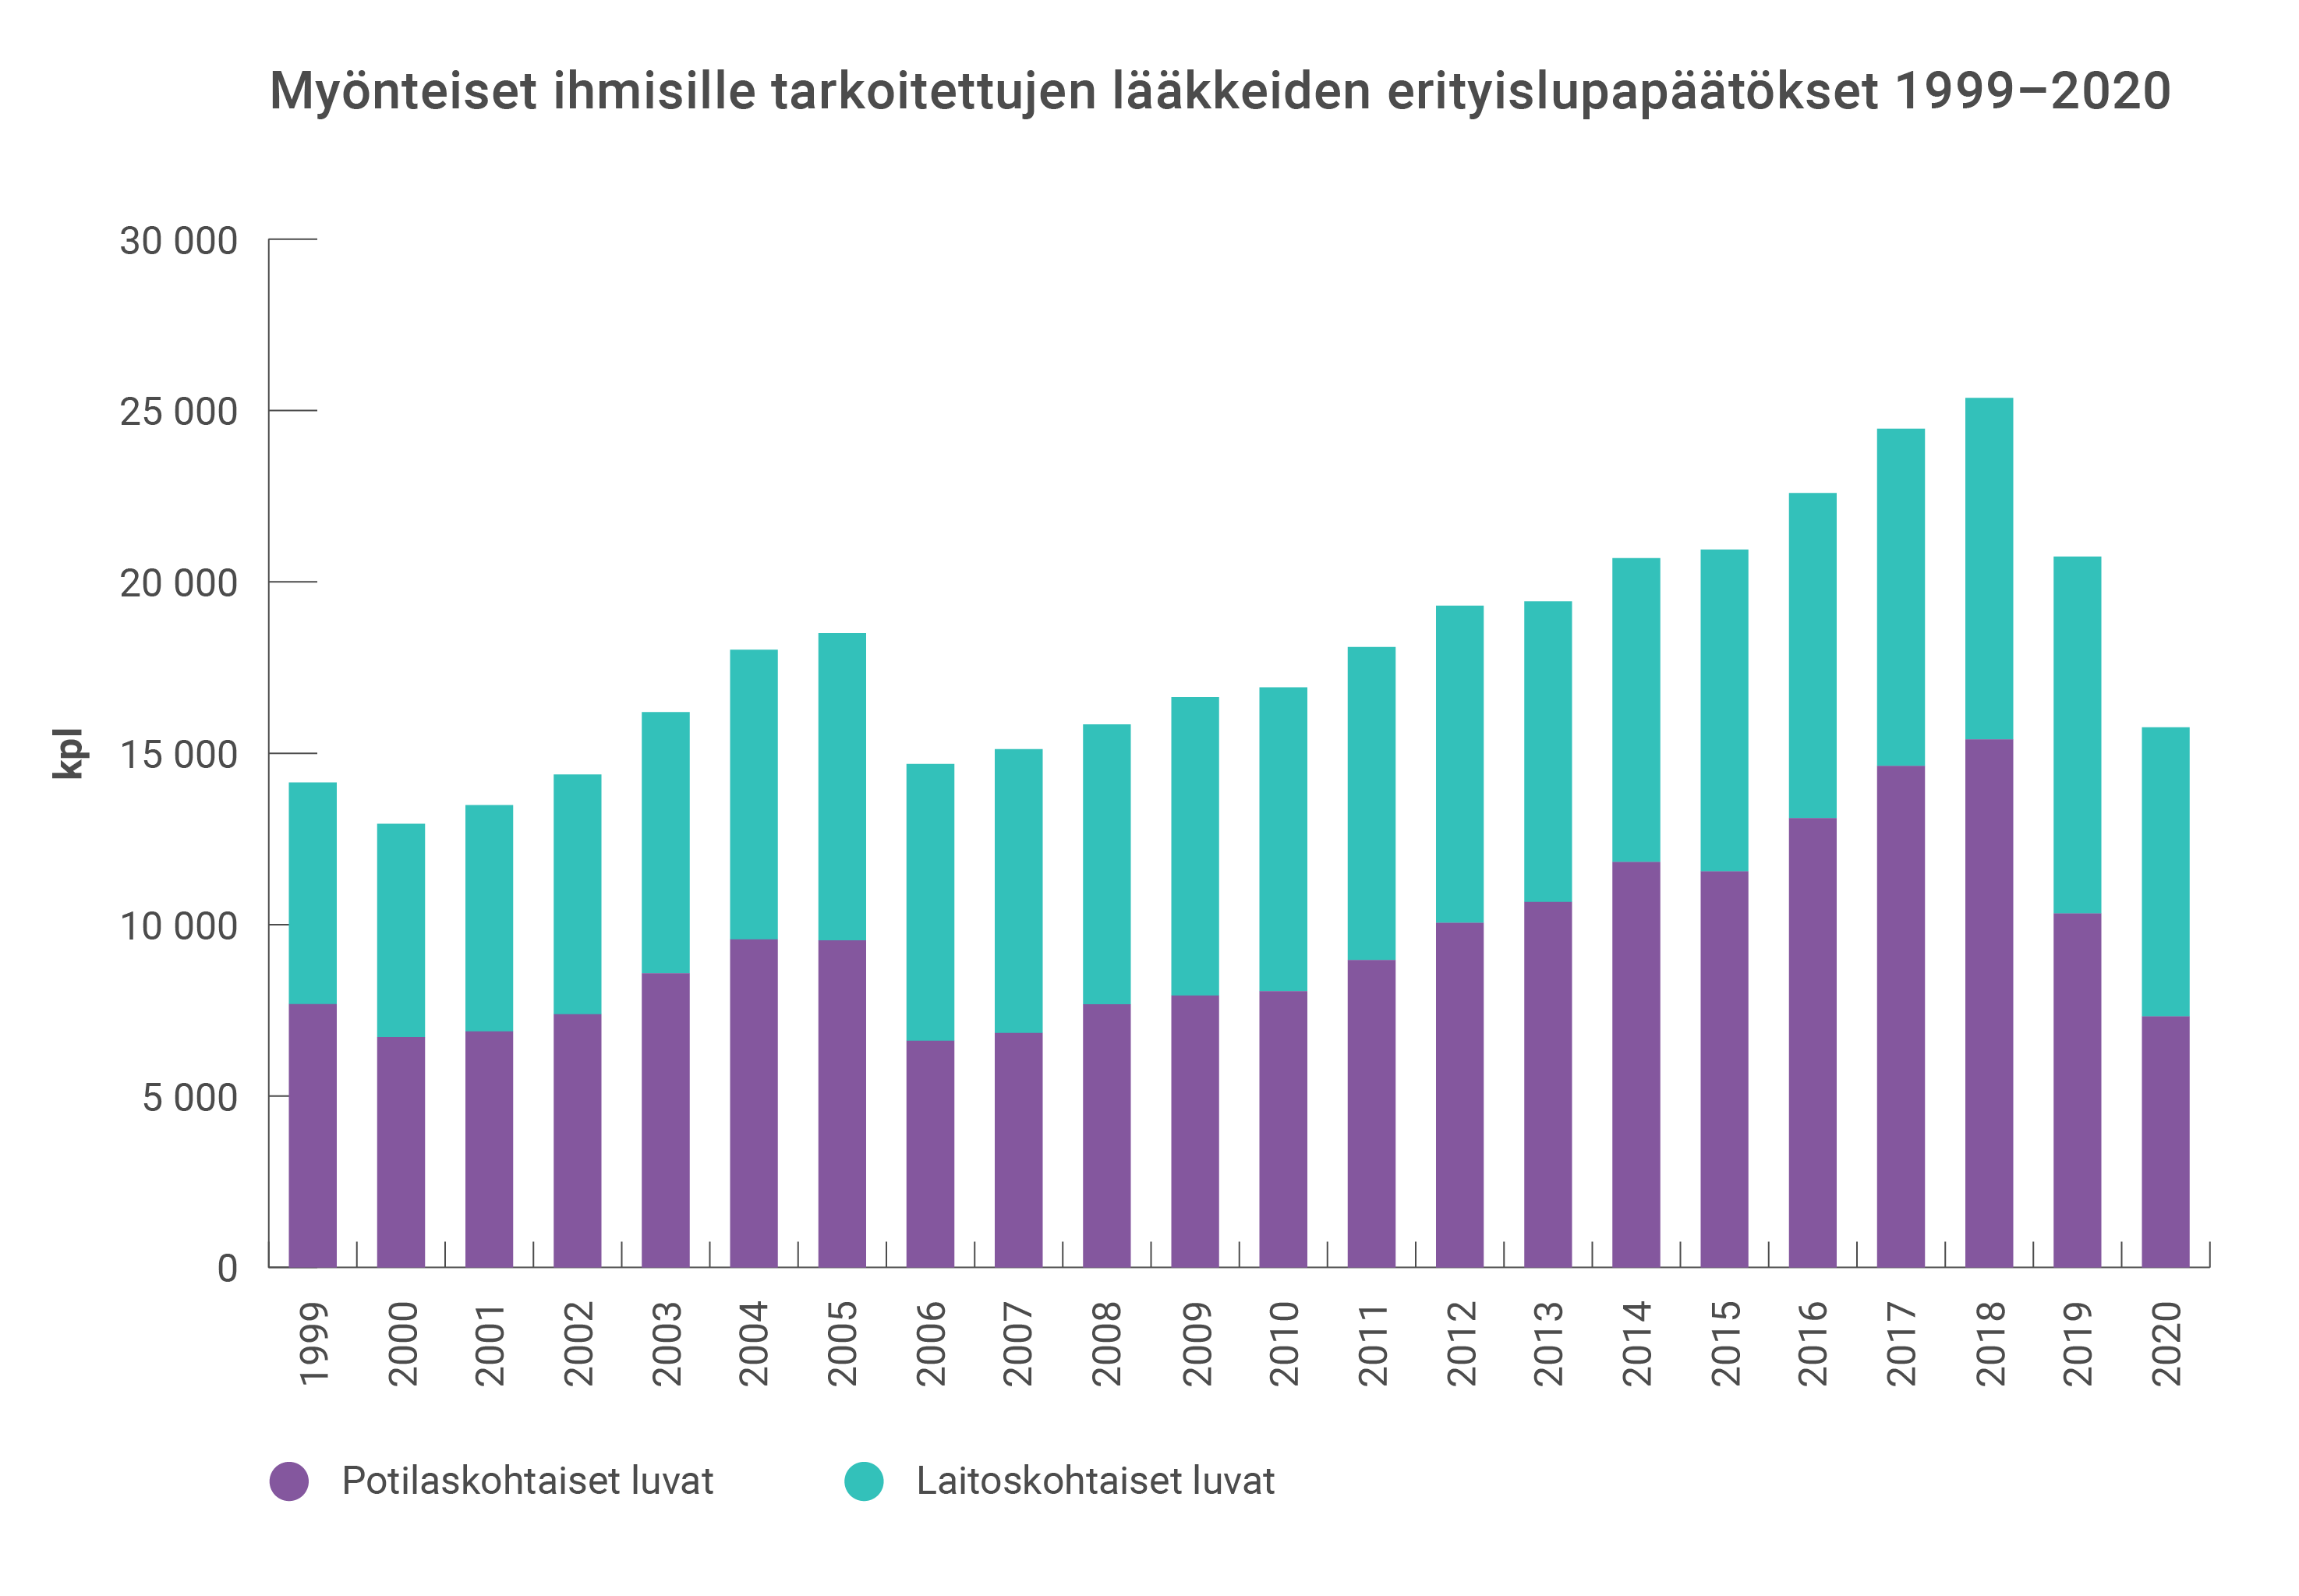 Myönteisten ihmisille tarkoitettujen lääkkeiden erityslupapäätökset ovat kasvaneet tasaisesti vuosittain vuodesta 2006 vuoteen 2018, jonka jälkeen ne ovat laskeneet vuosittain.